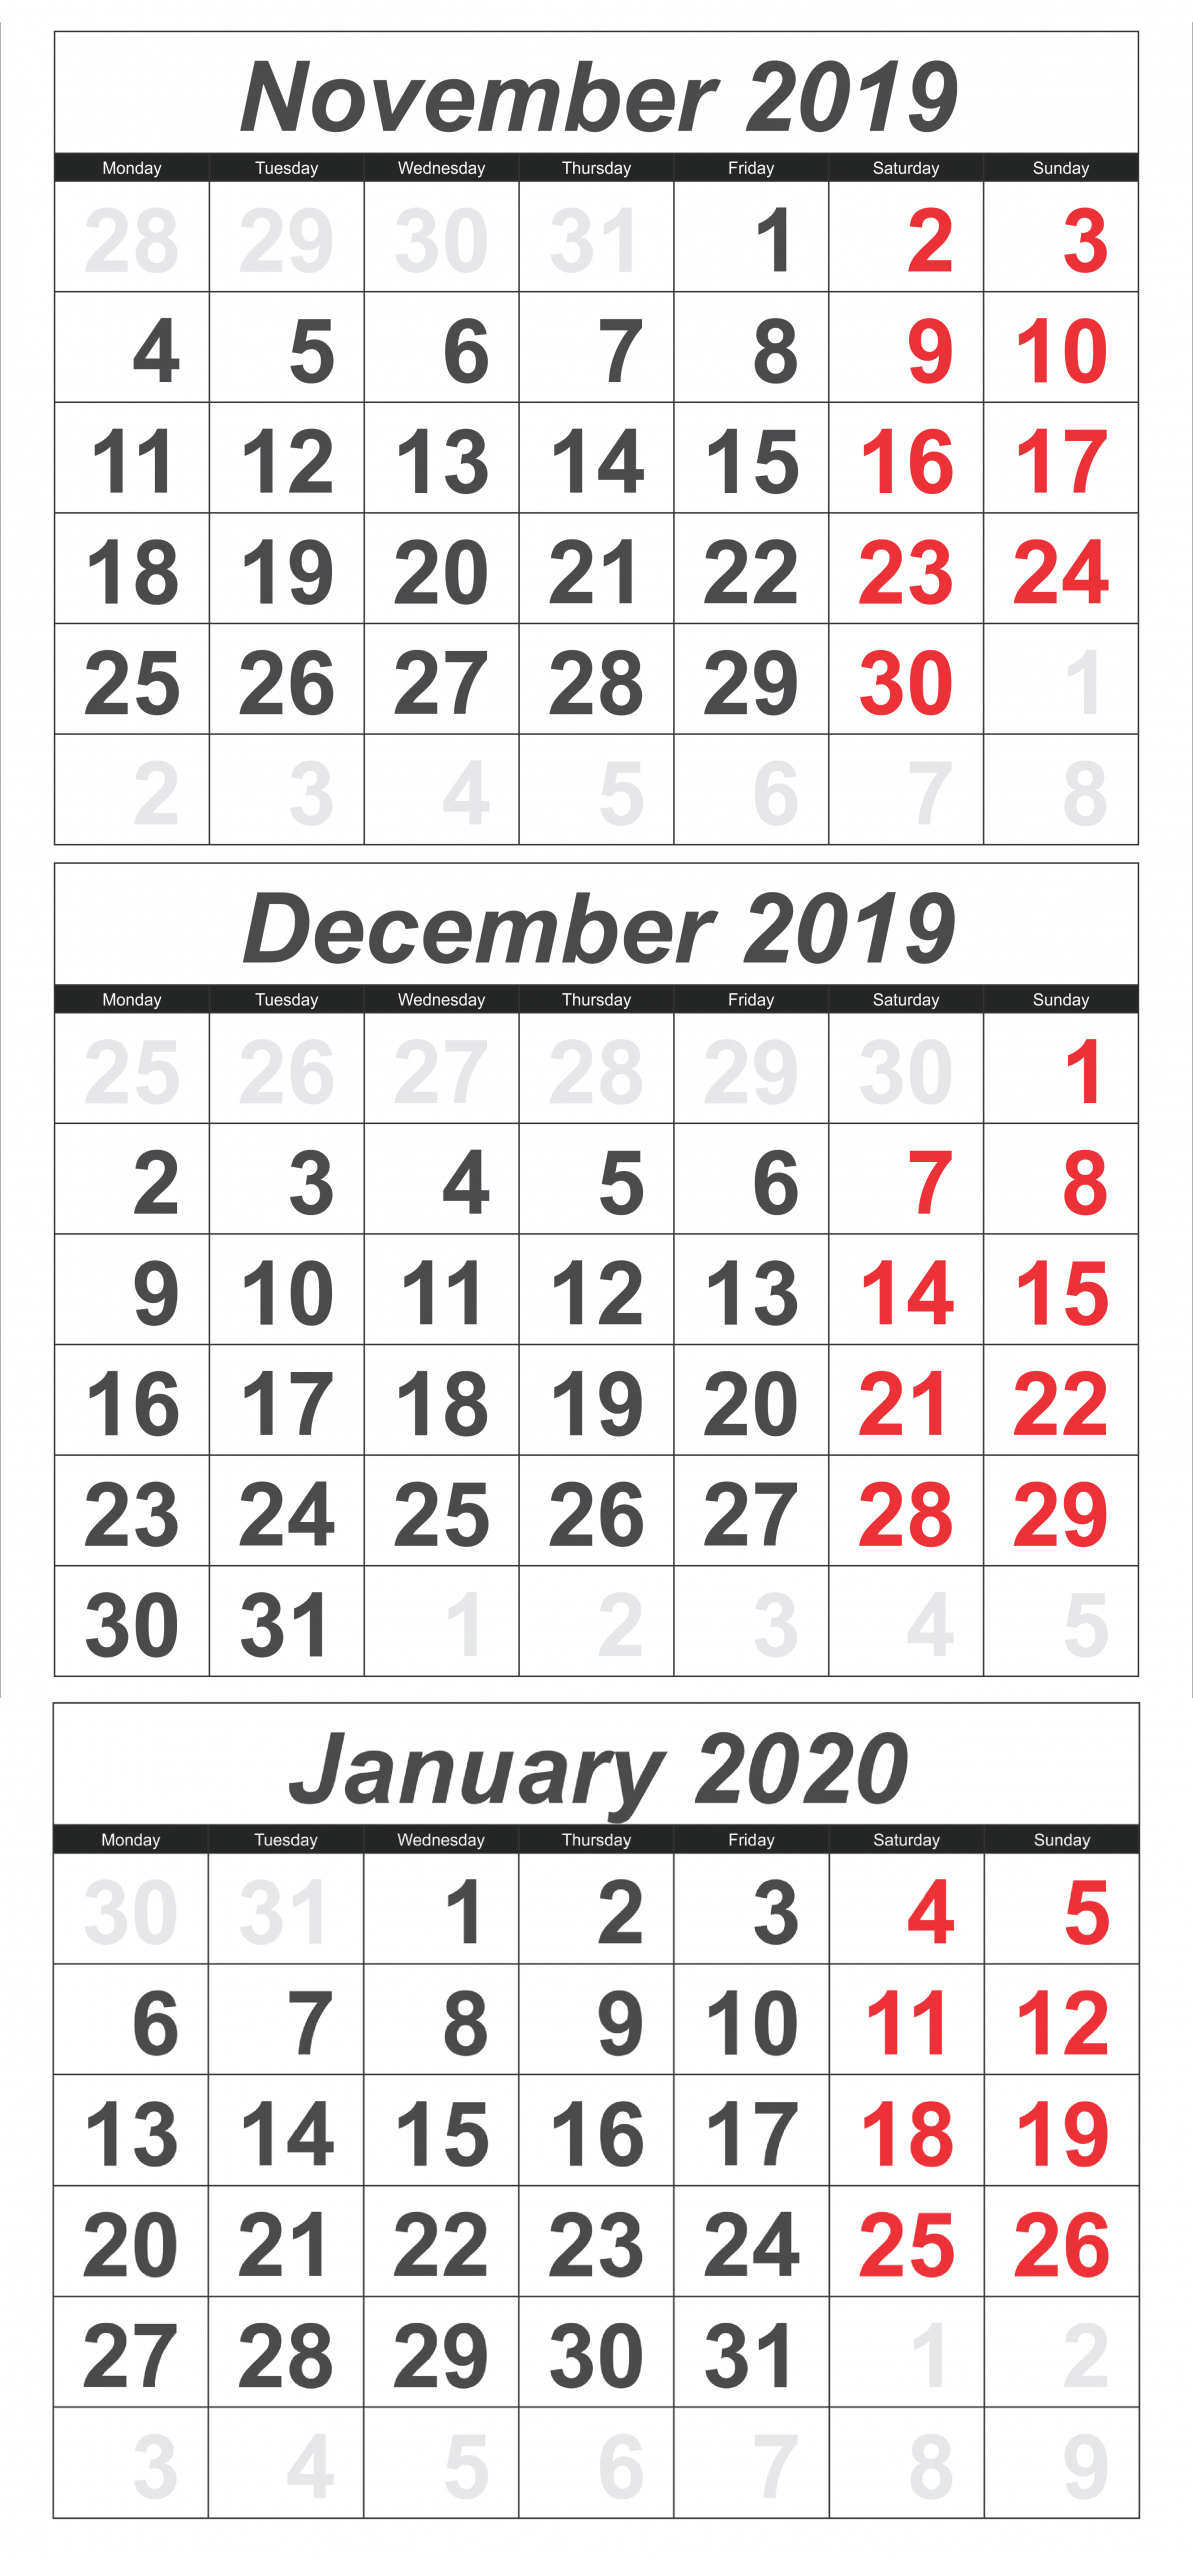 Catch Julian Calendar For November And December 2020 3 Month Calendar November December January 2021